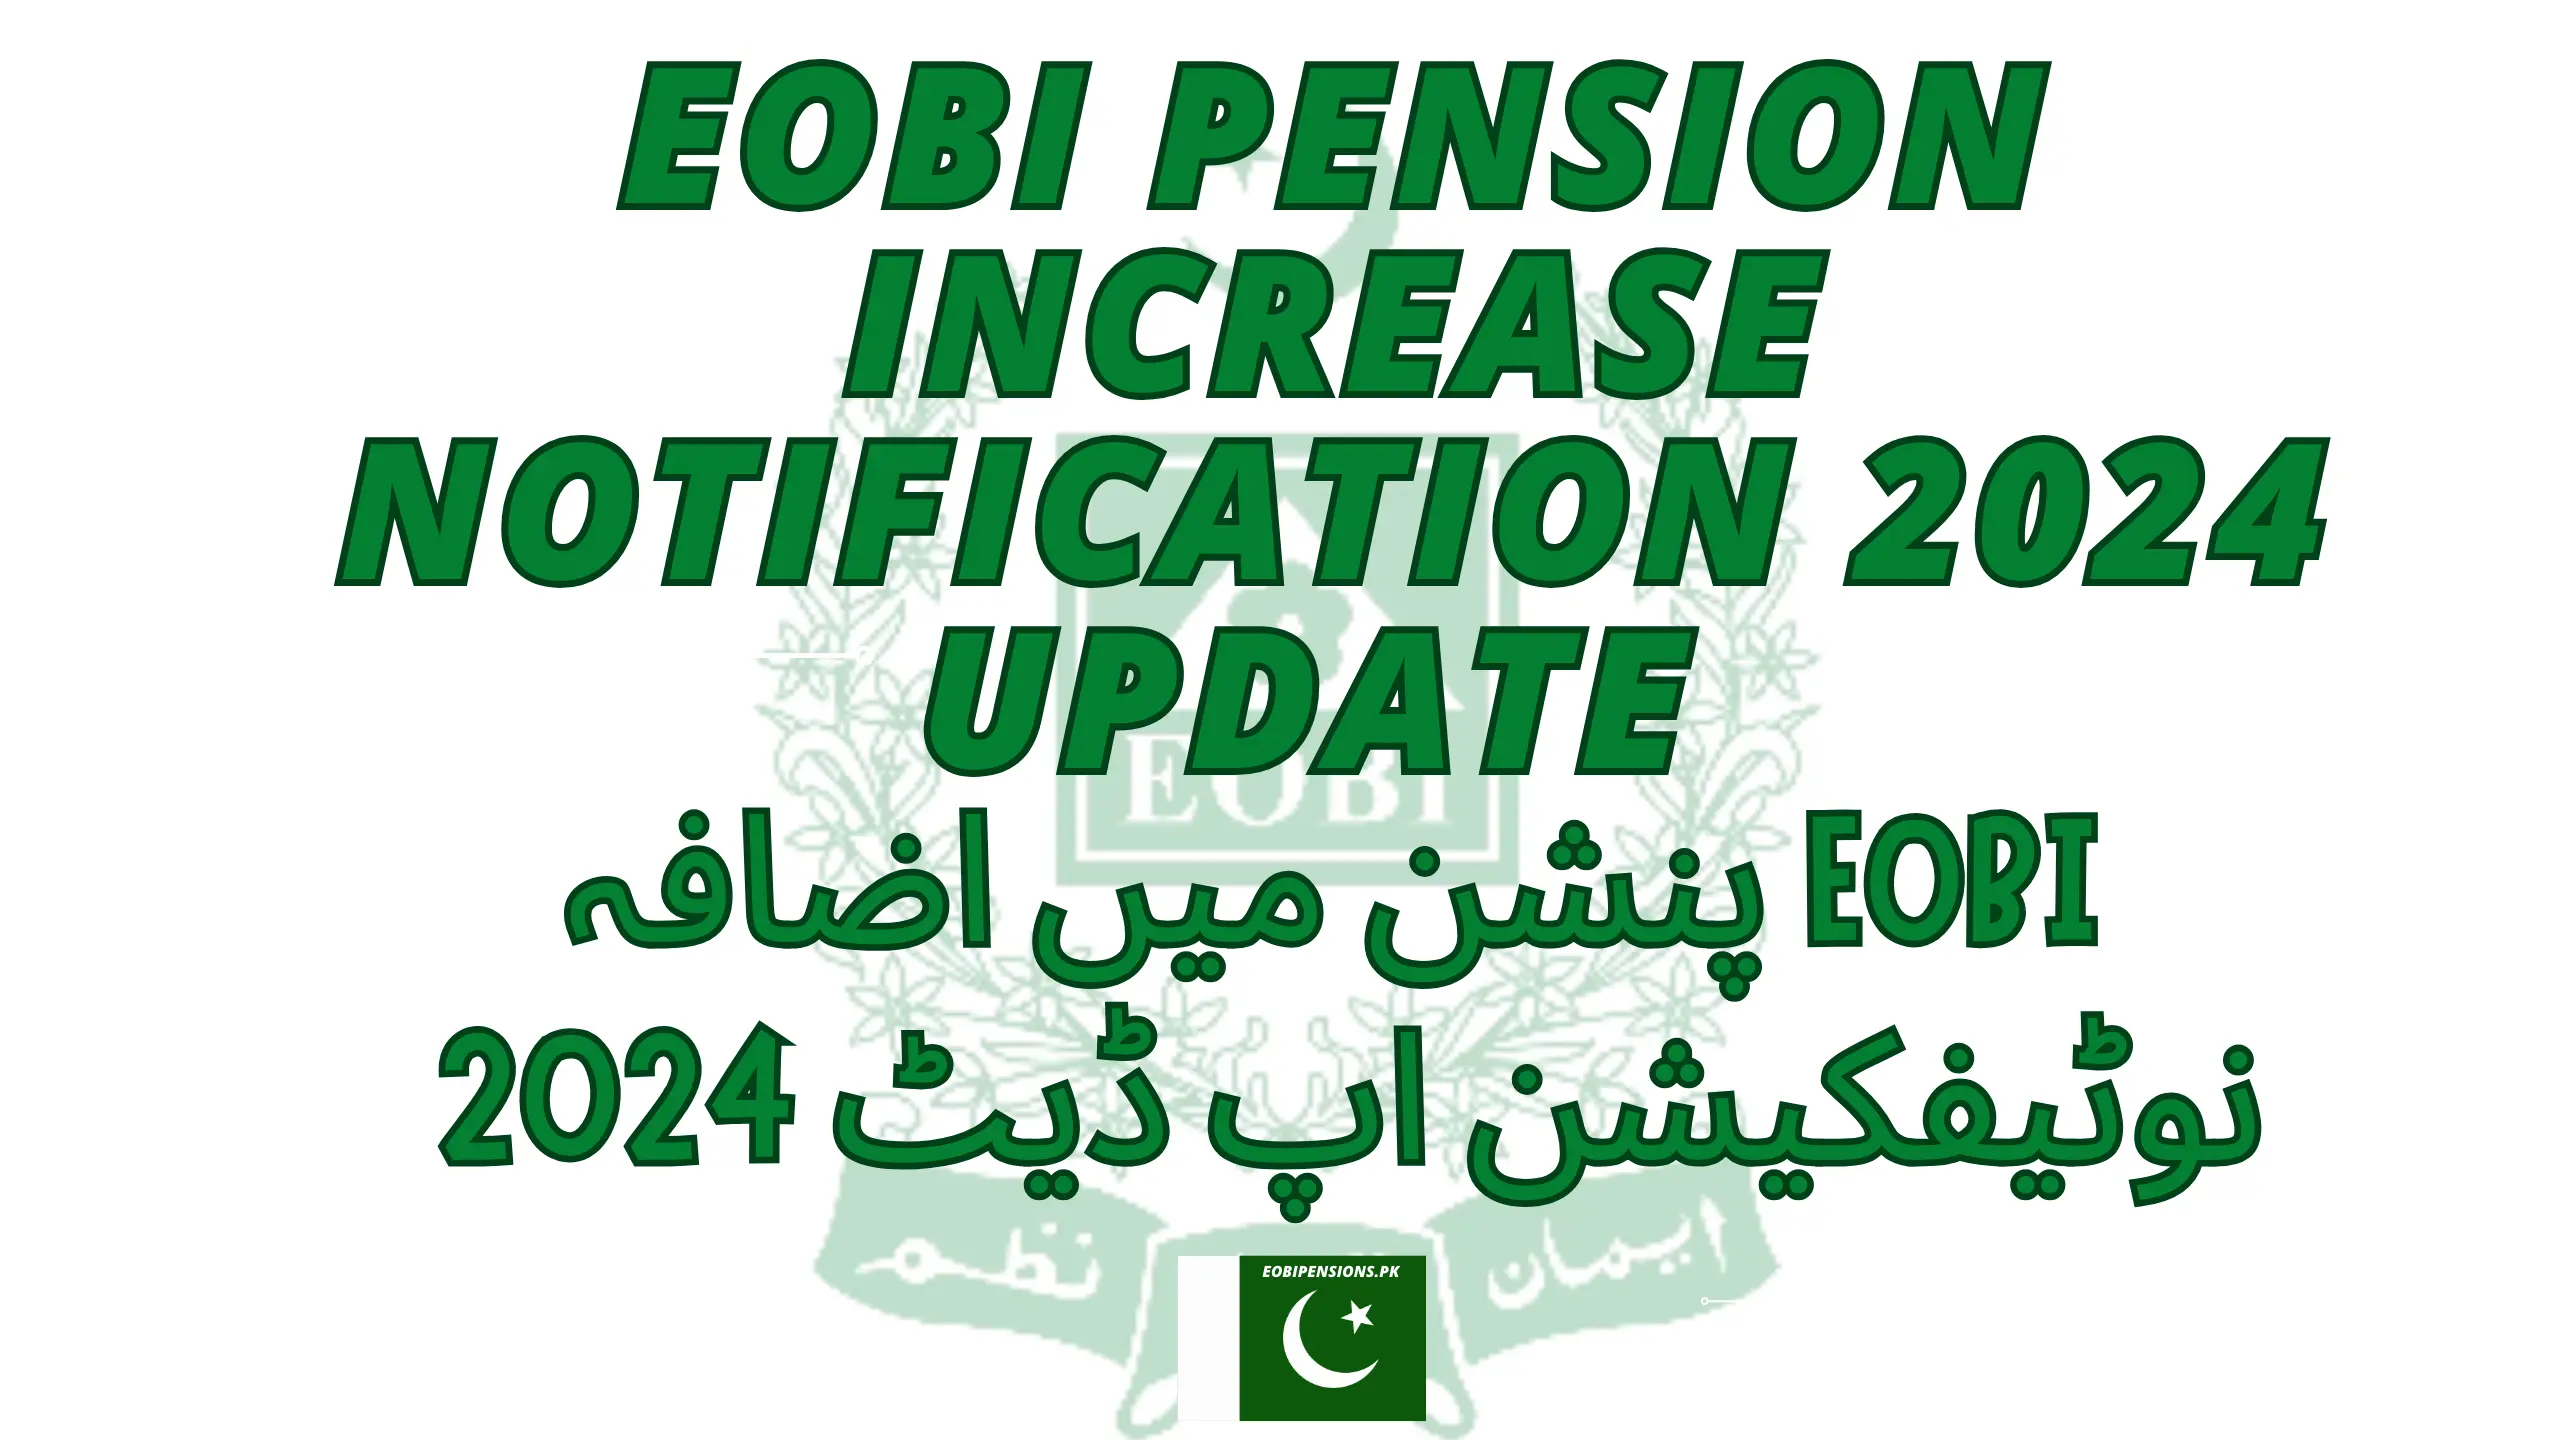 EOBI Pension Increase Notification